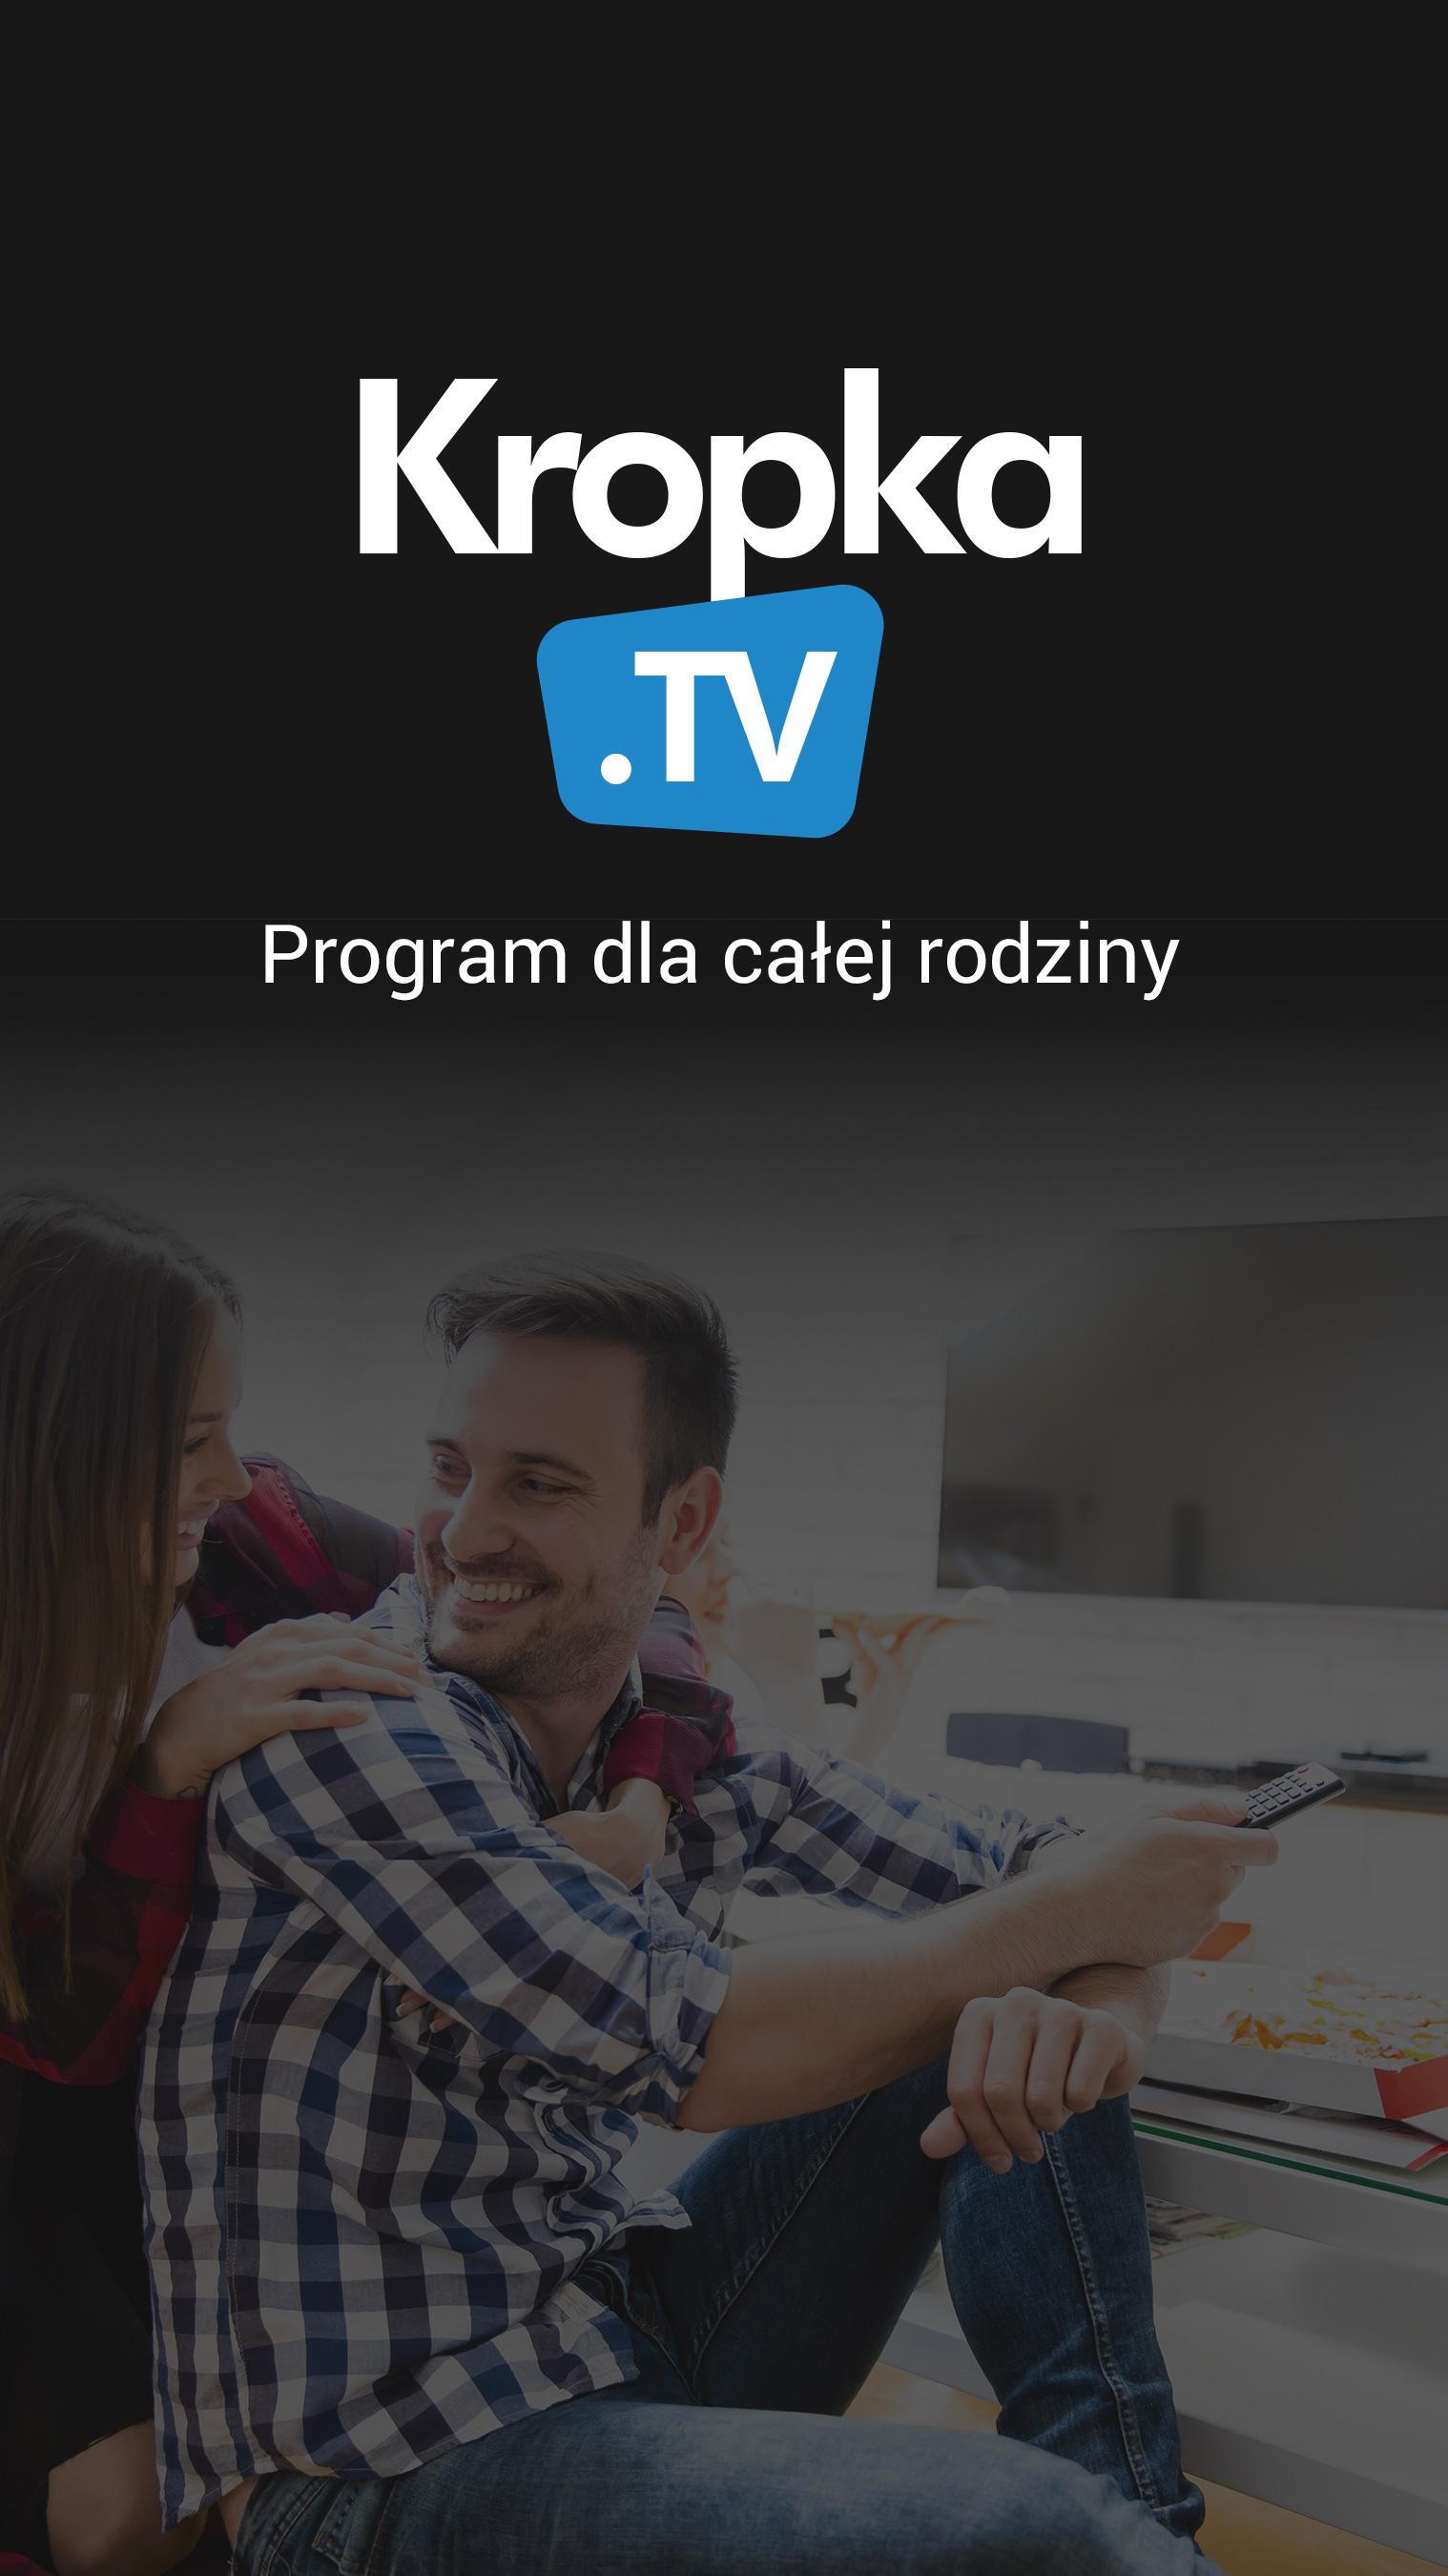 Android application Program TV - Kropka TV screenshort